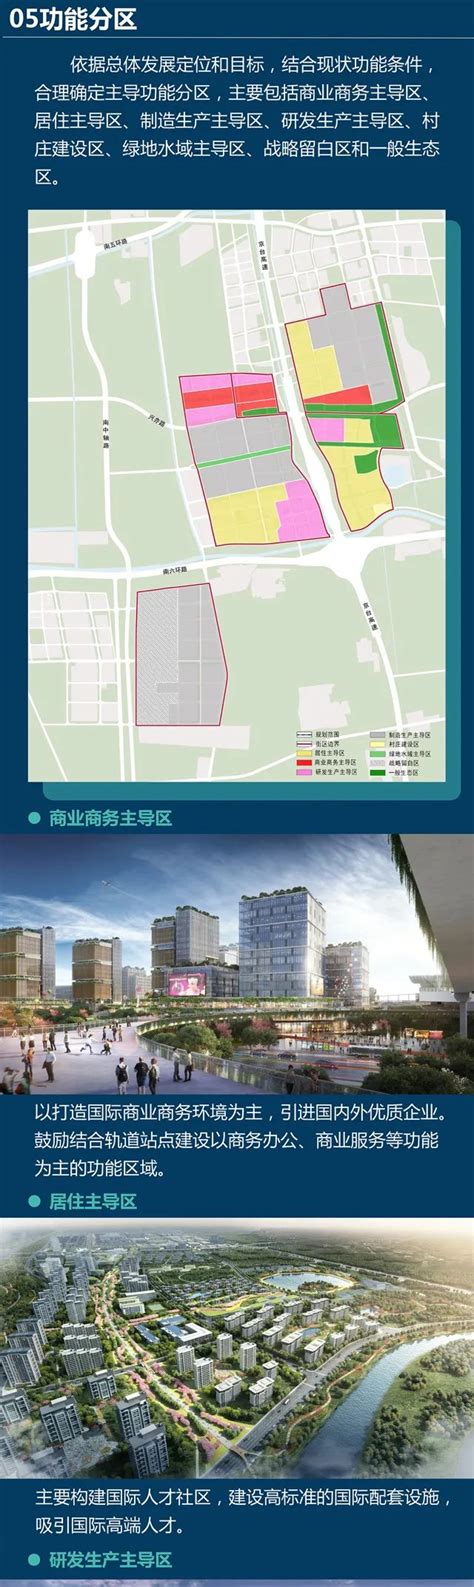 江西省科学院倒班宿舍（人才公寓）项目规划建筑设计方案批后公布 - 南昌市自然资源和规划局